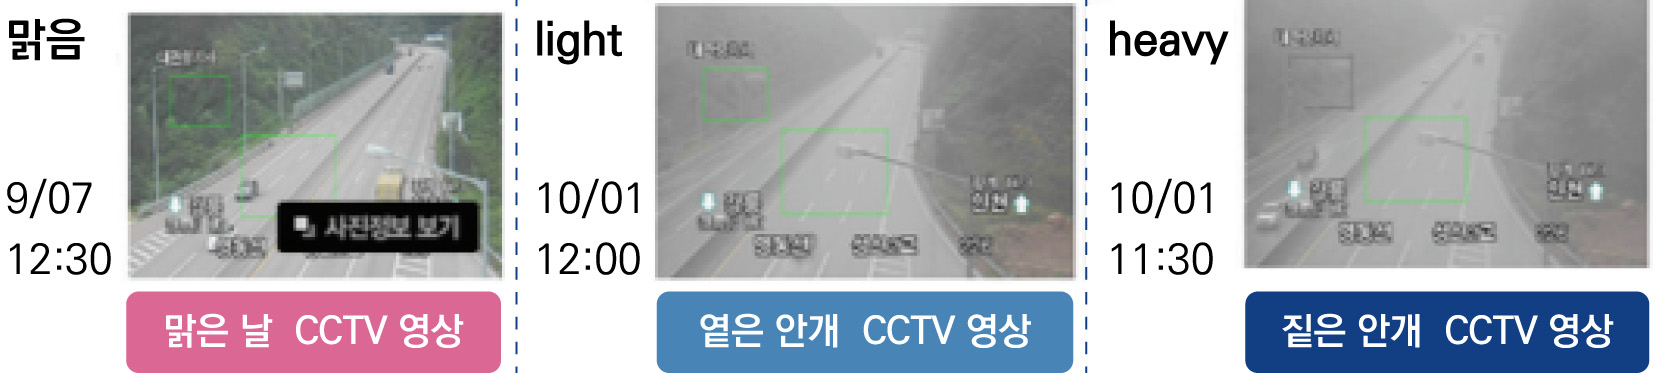 CCTV를 활용한 기상정보수집 자료 : 로드플러스 홈페이지